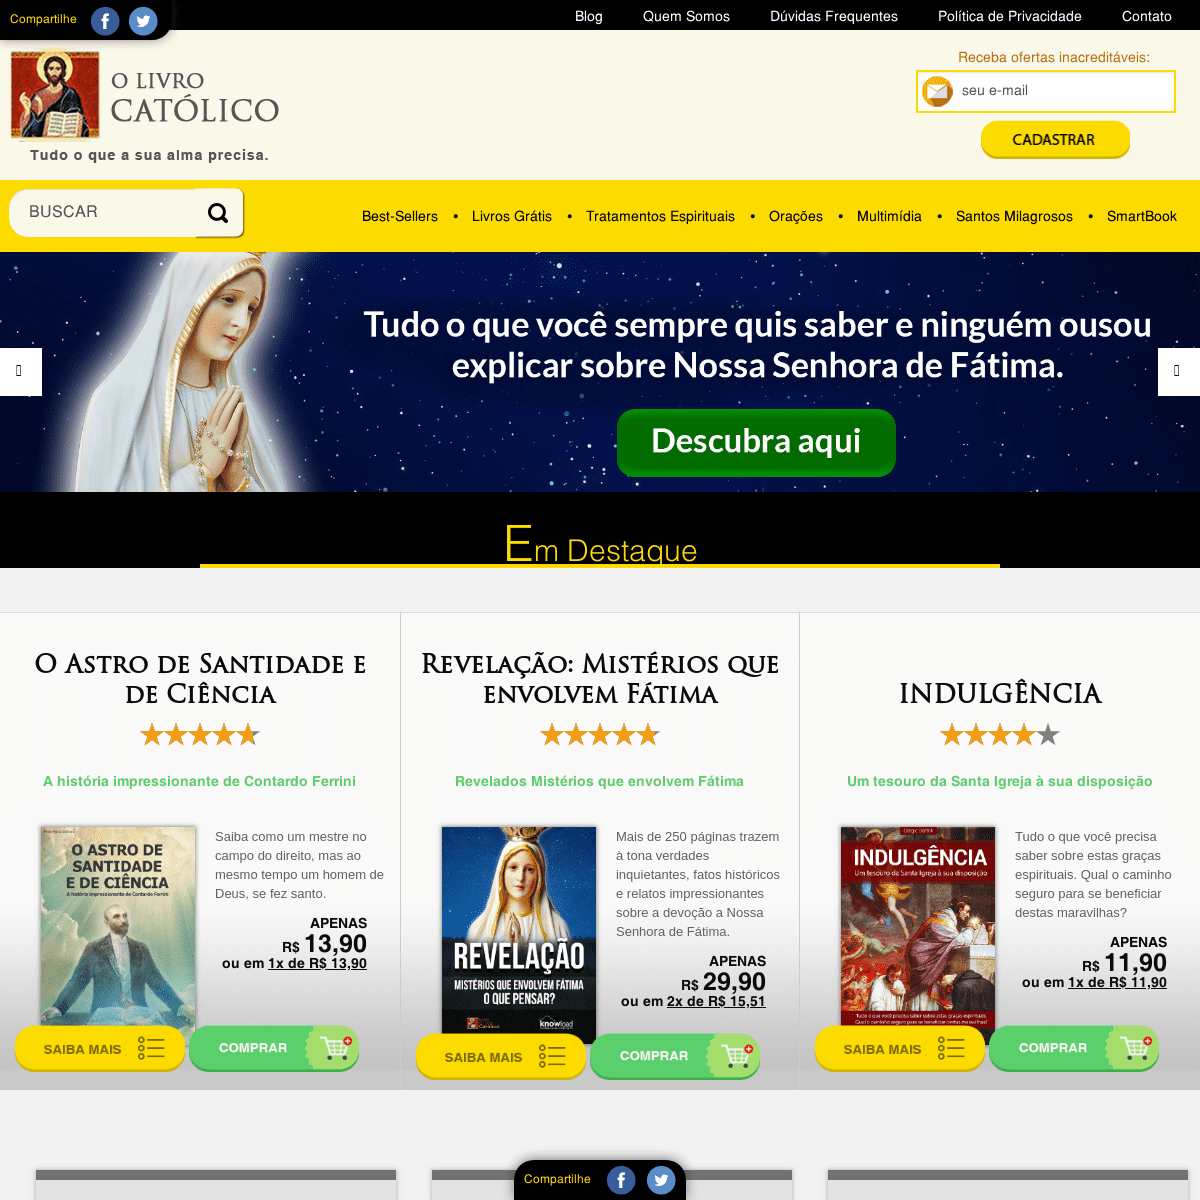 A complete backup of livroscatolicos.com.br